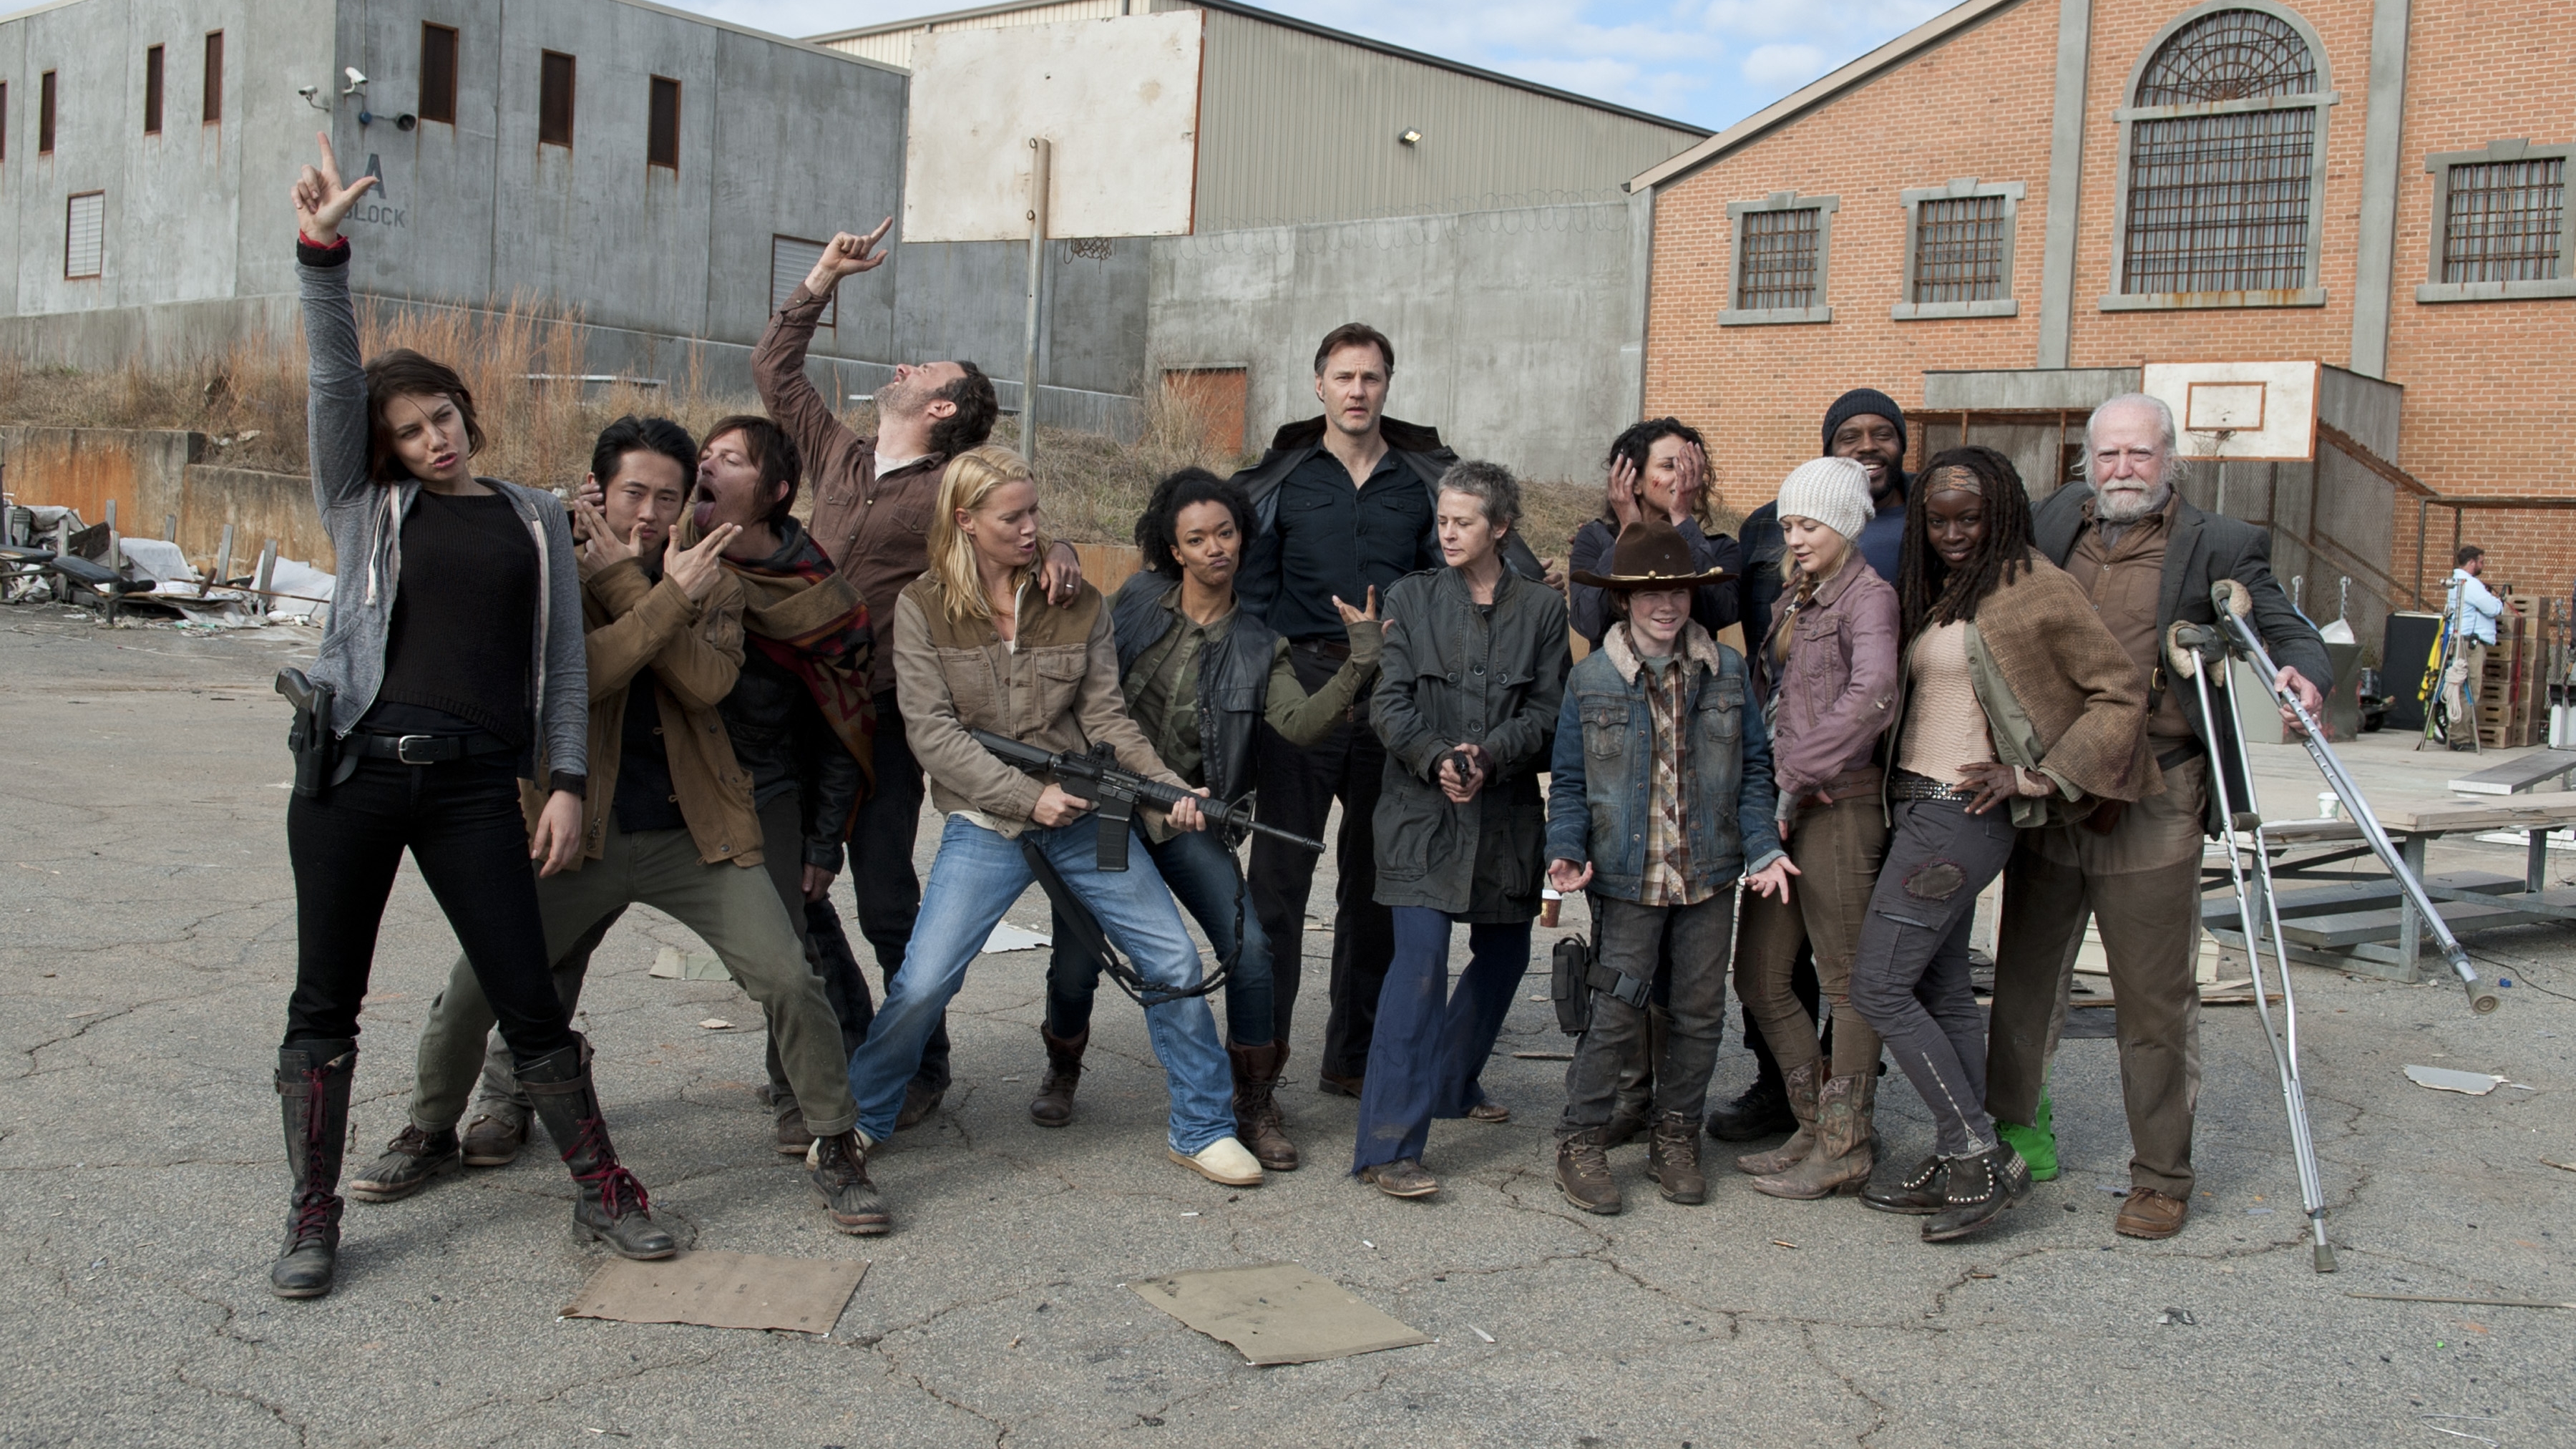 Descarga gratuita de fondo de pantalla para móvil de Series De Televisión, The Walking Dead.